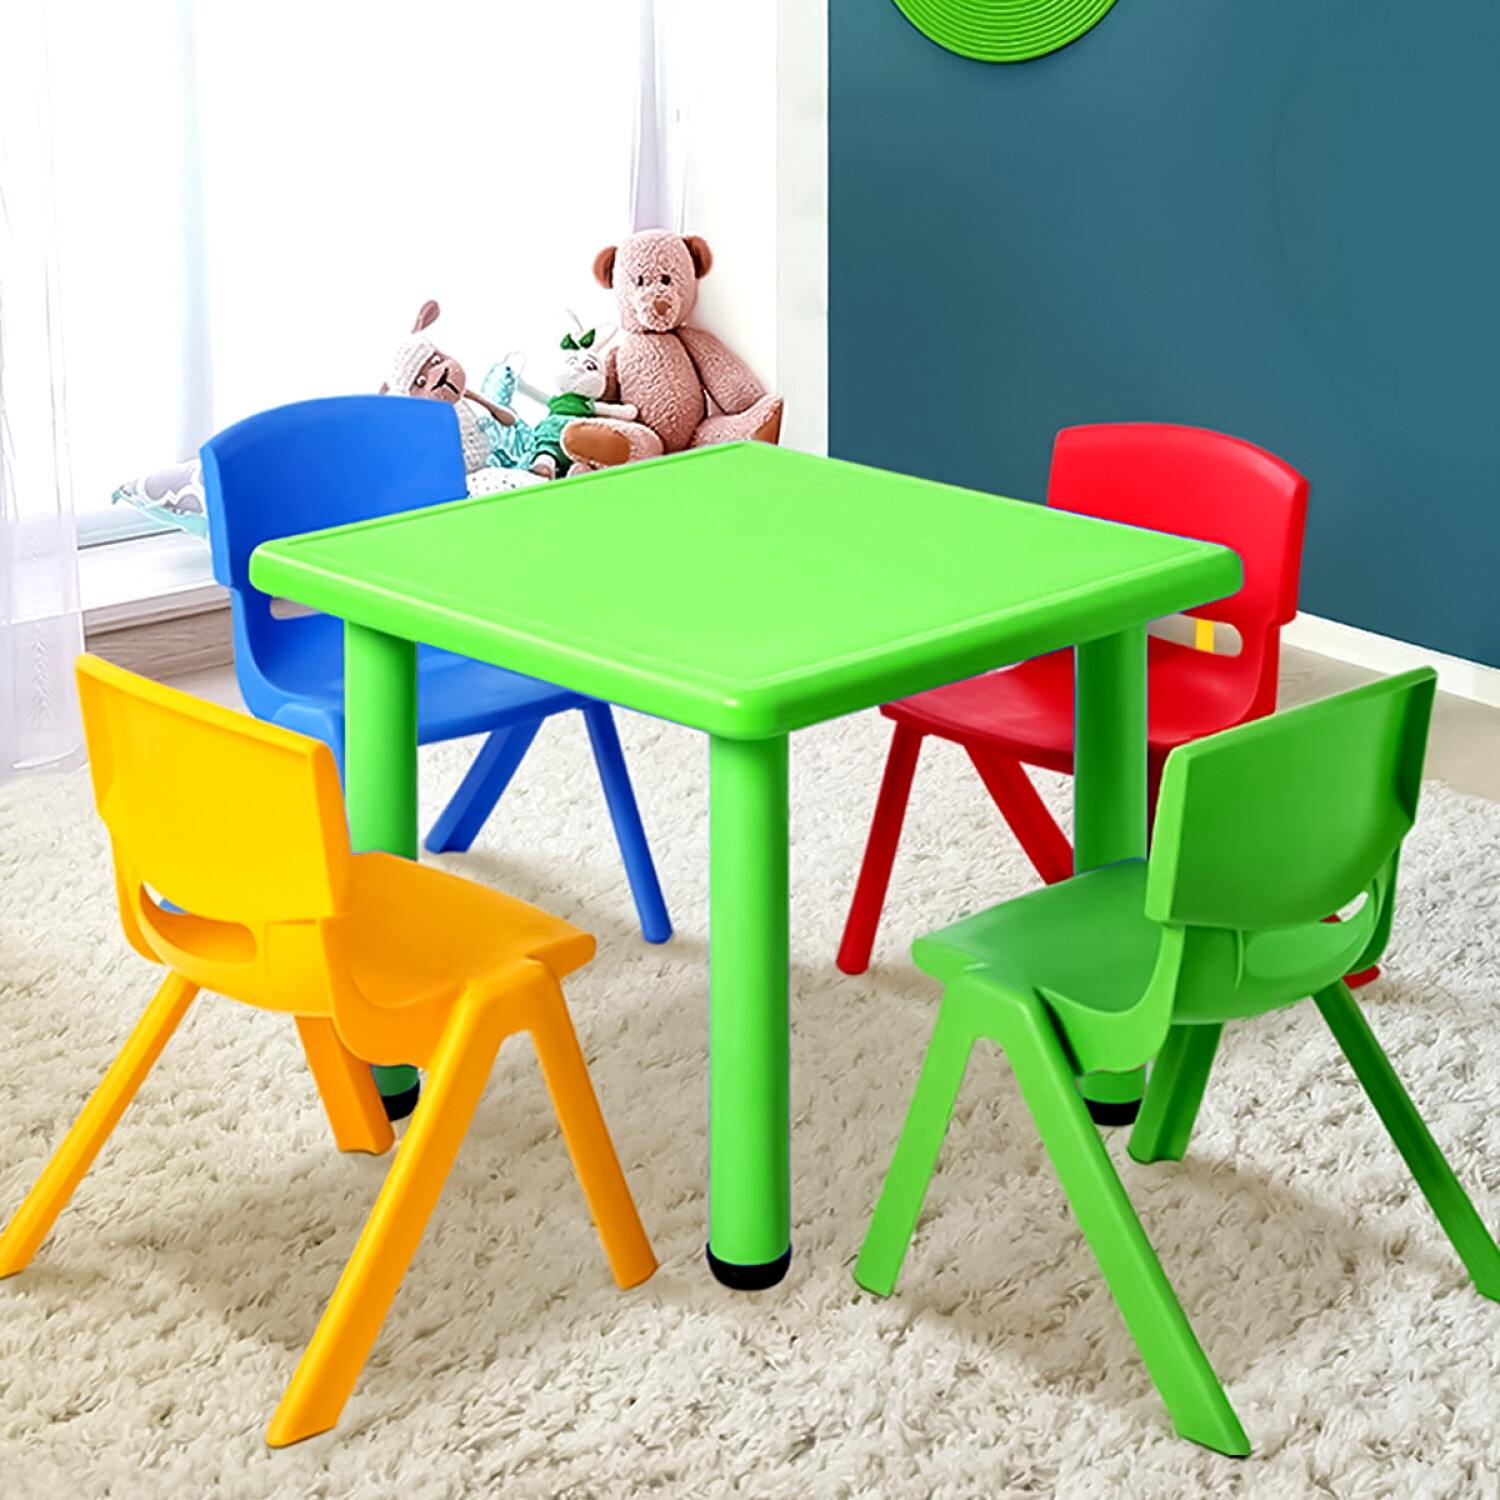 Taburete infantil de plástico color verde y patas multicolor de